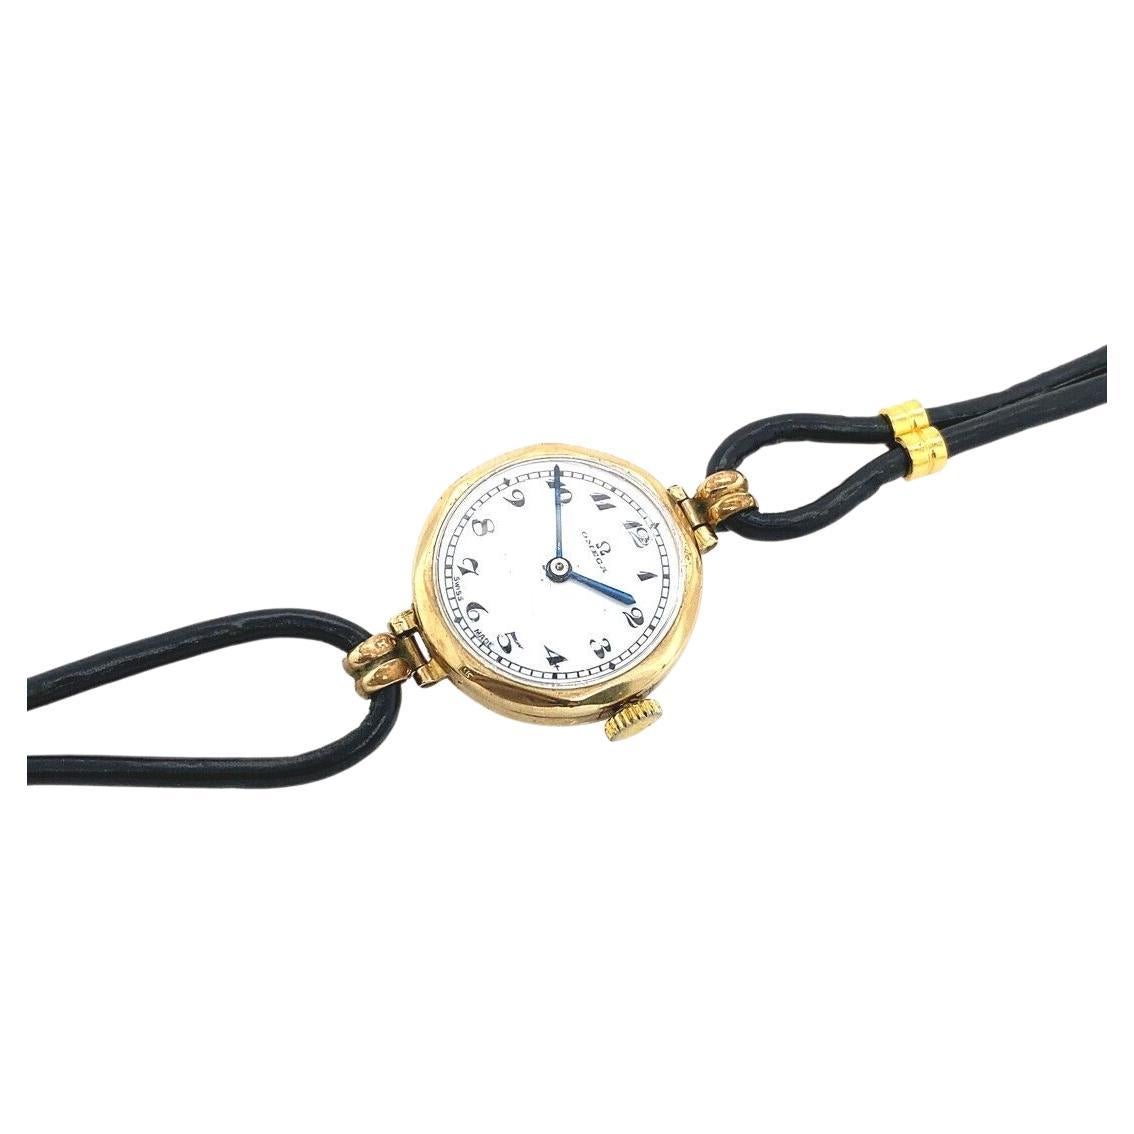 Dies ist eine klassische Vintage-Damenuhr. Das runde Zifferblatt ist vergoldet, das Lederarmband und das Gehäuse sind aus 9 Karat Gold. Sie hat 15 Juwelen und das Uhrwerk ist manuell. Die Uhr ist in ausgezeichnetem Zustand.

Zusätzliche